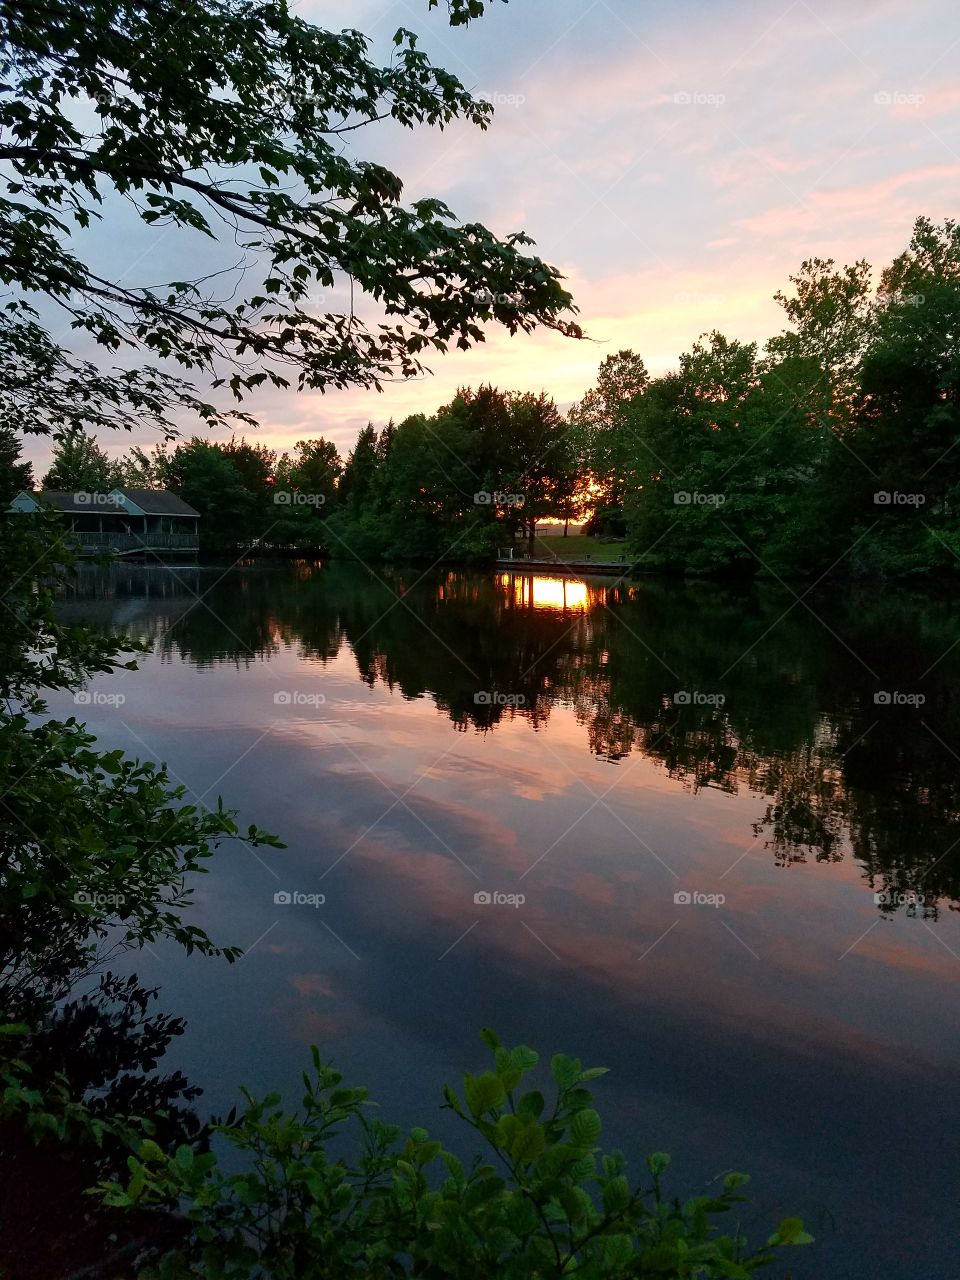 Sunset at Lake Anna State Park, VA